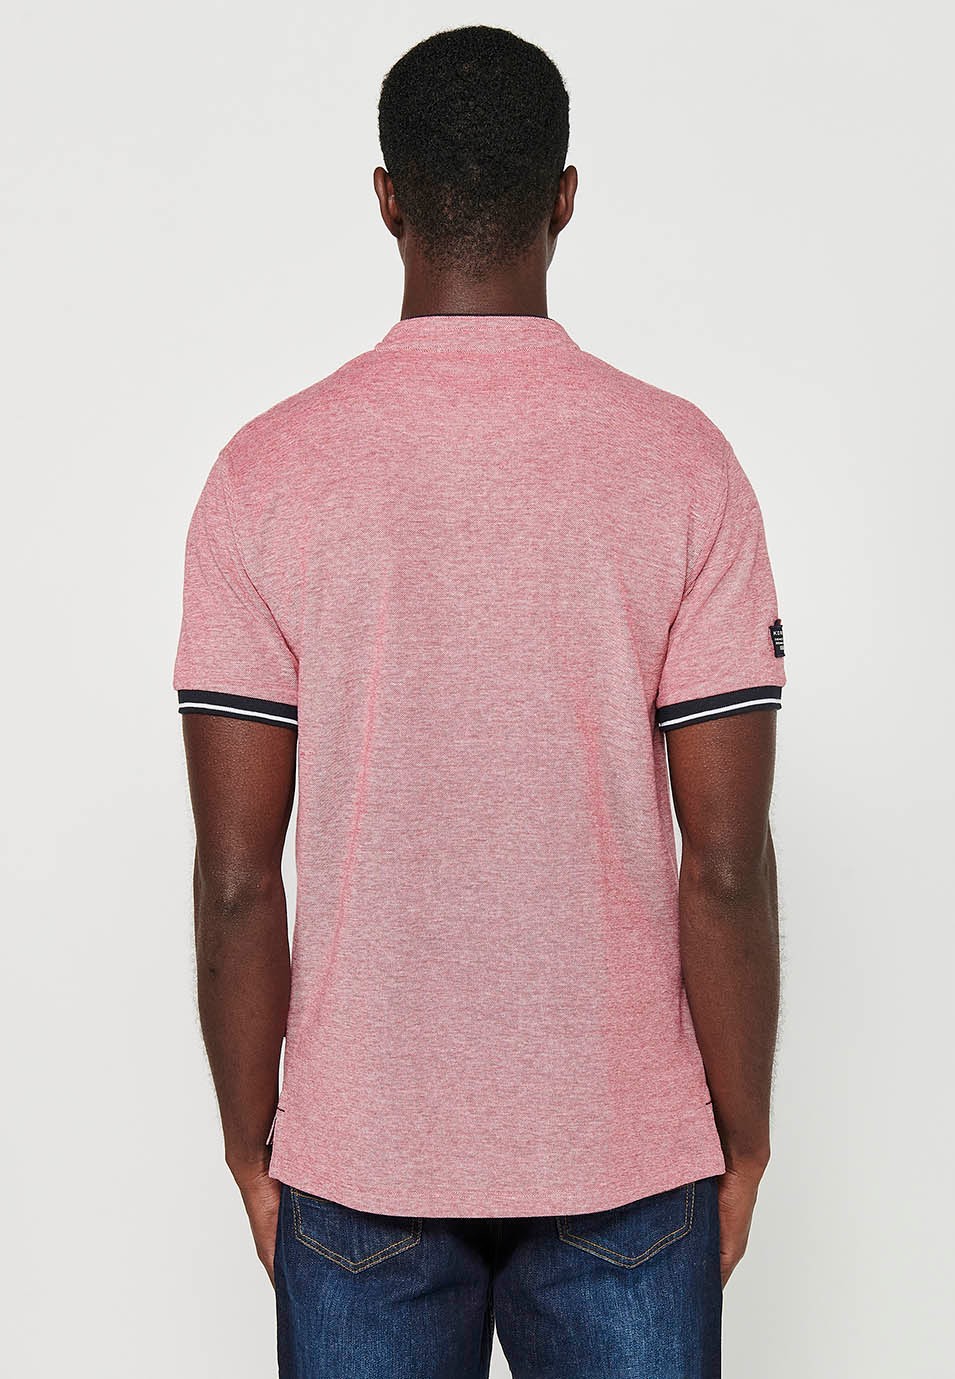 Kurzärmliges Baumwoll-Poloshirt mit geripptem Finish, Rundhalsausschnitt mit geknöpfter Öffnung und roten Seitenschlitzen für Herren 5